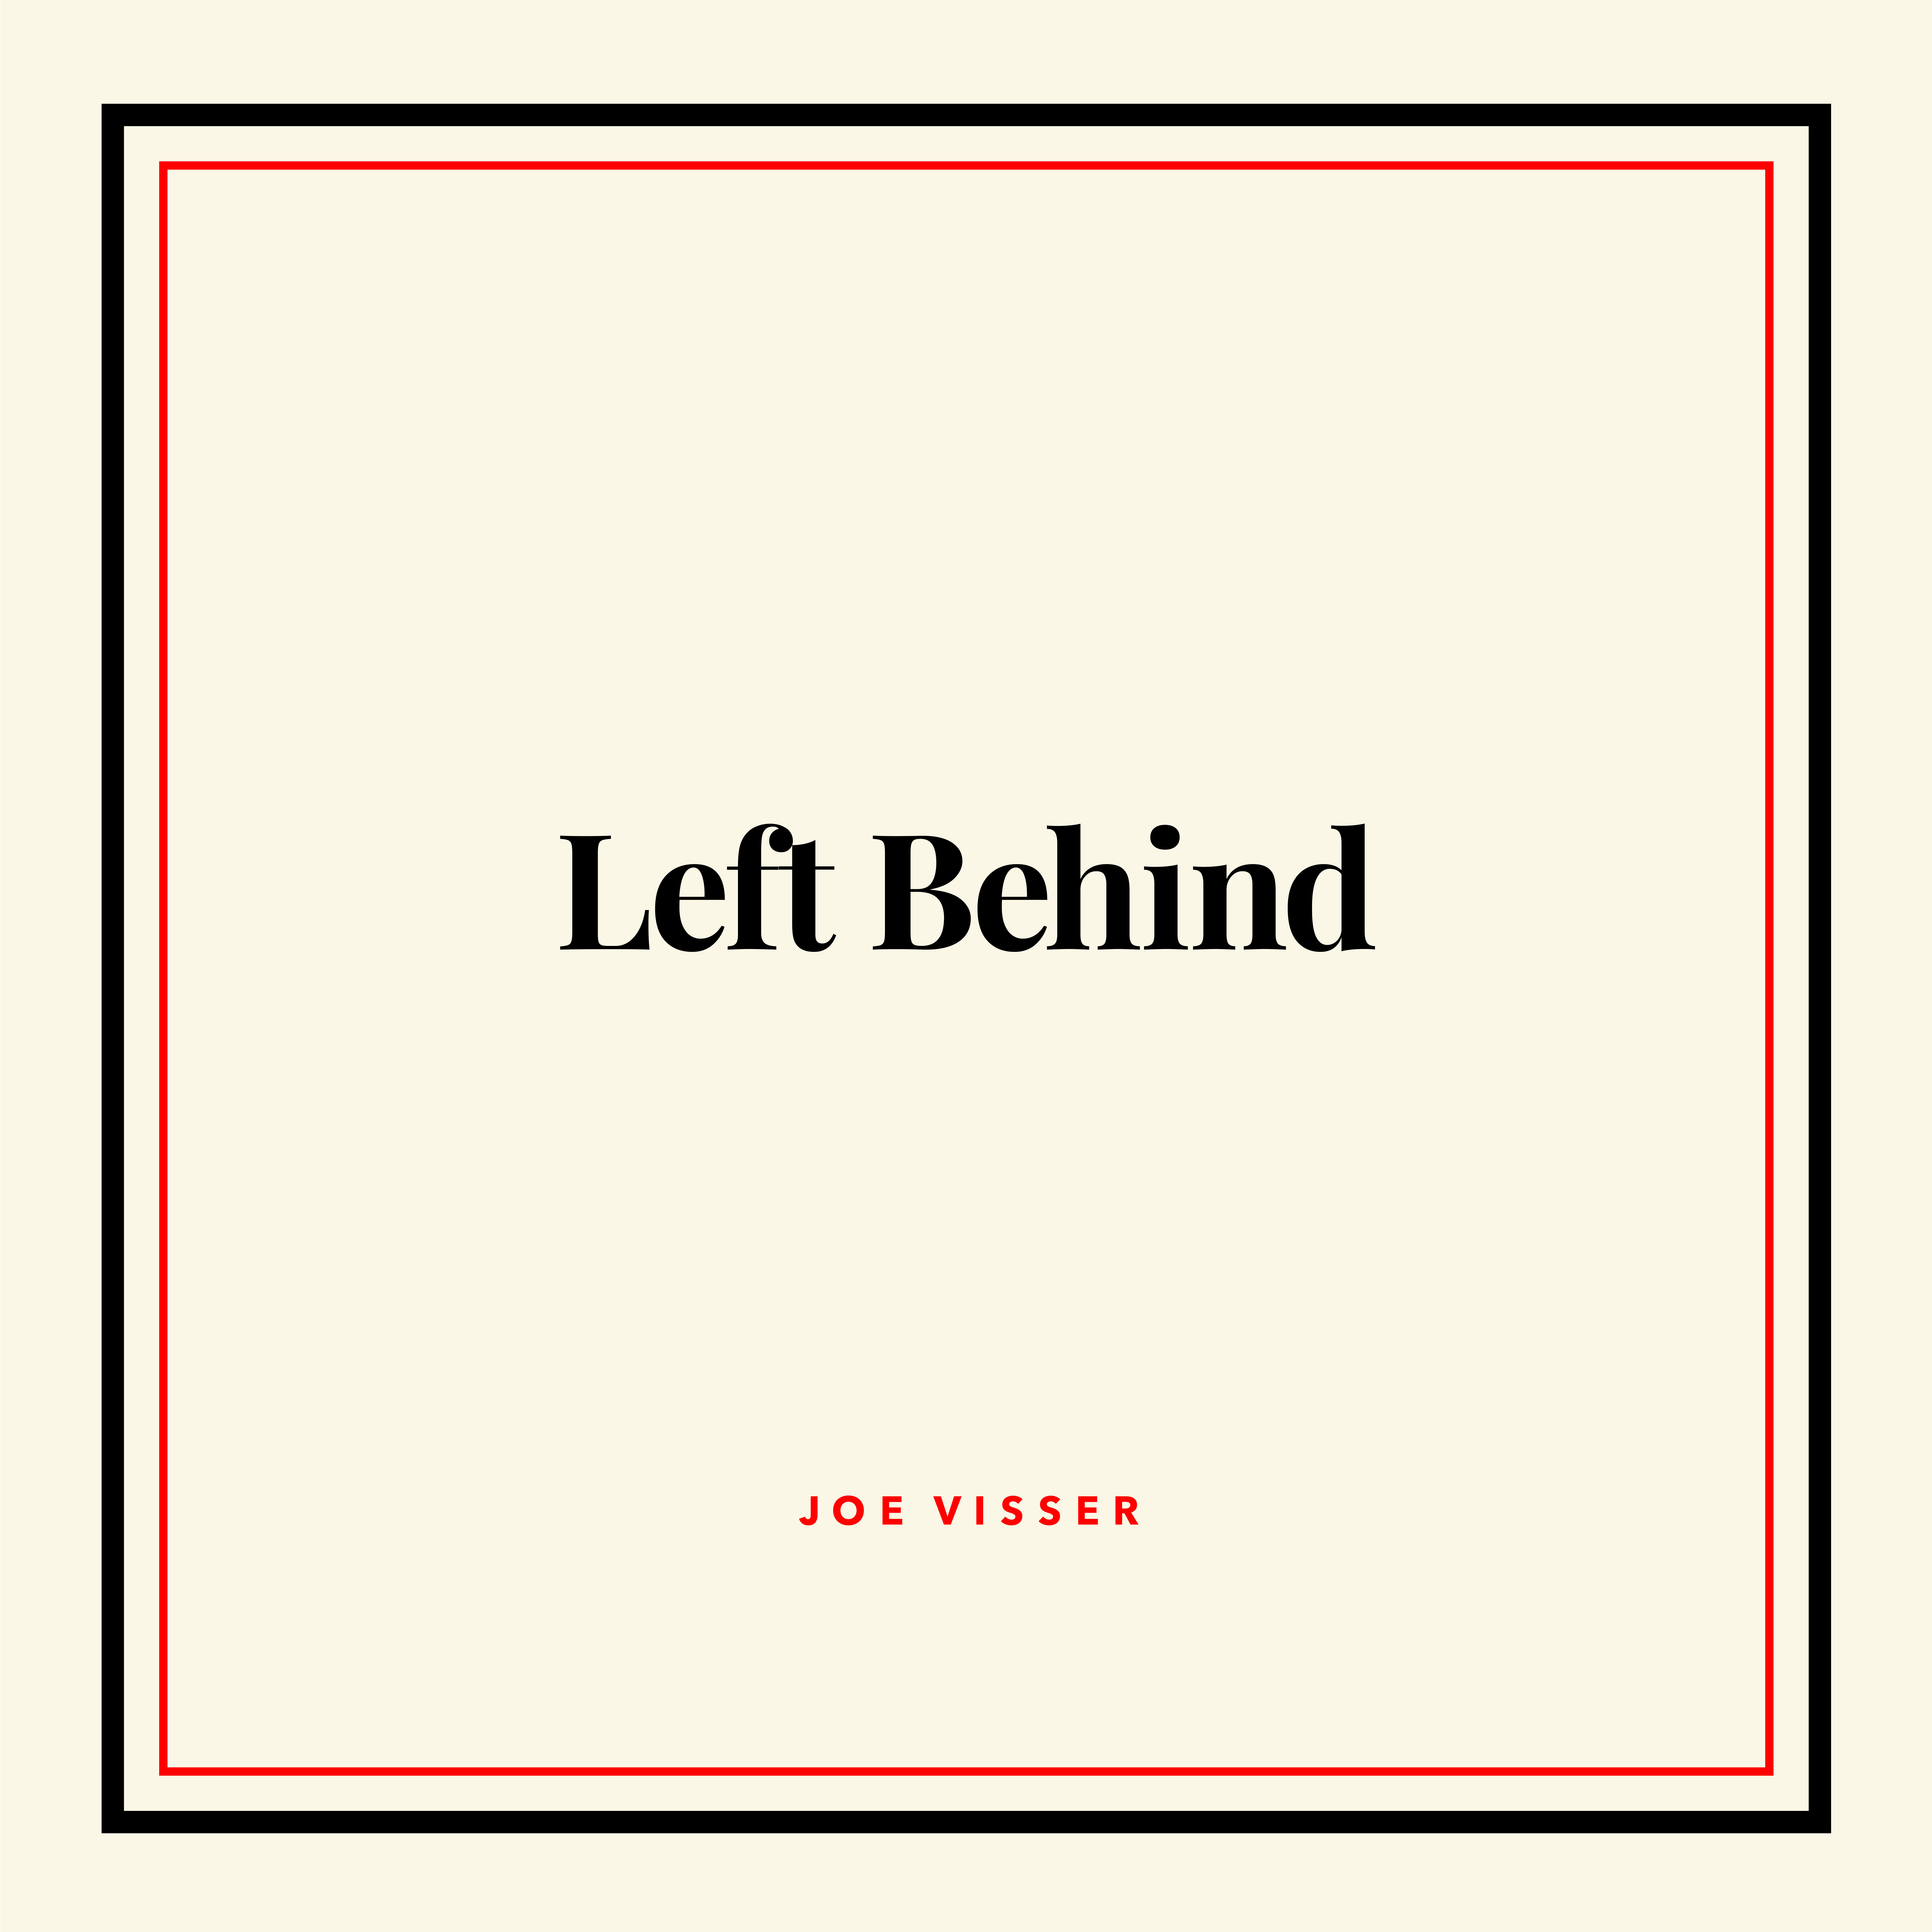 Artwork for track: Left Behind by Joe Visser